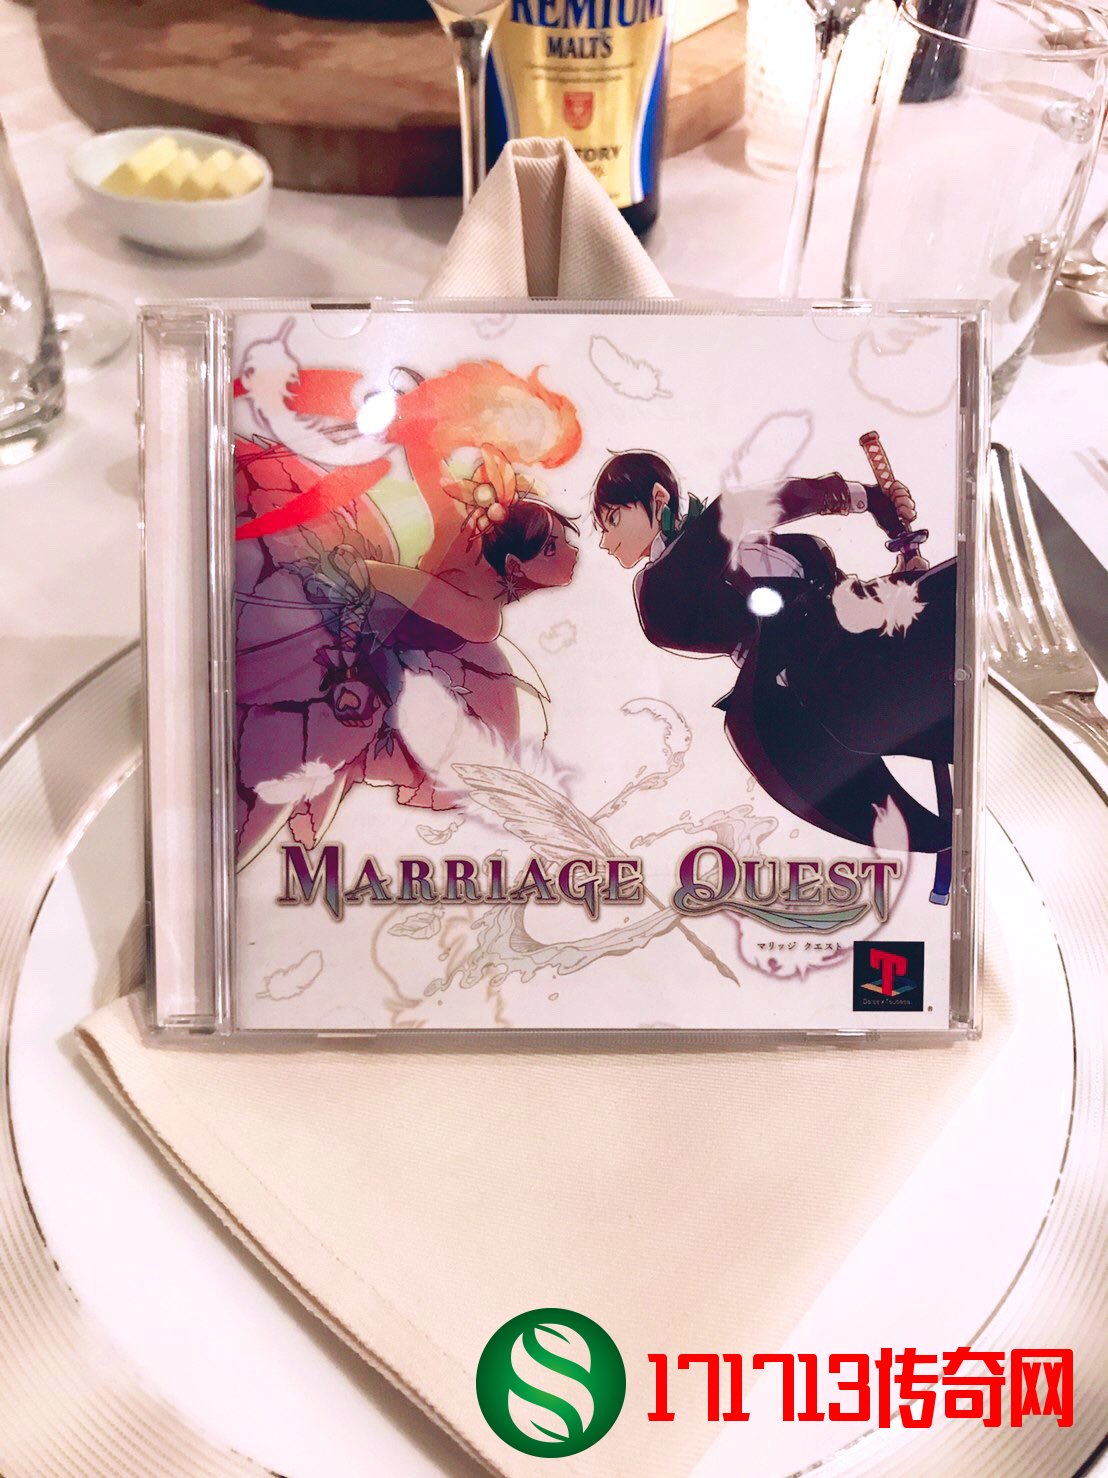 日本玩家的硬核婚礼 绘制亲友NPC自制纪念游戏！